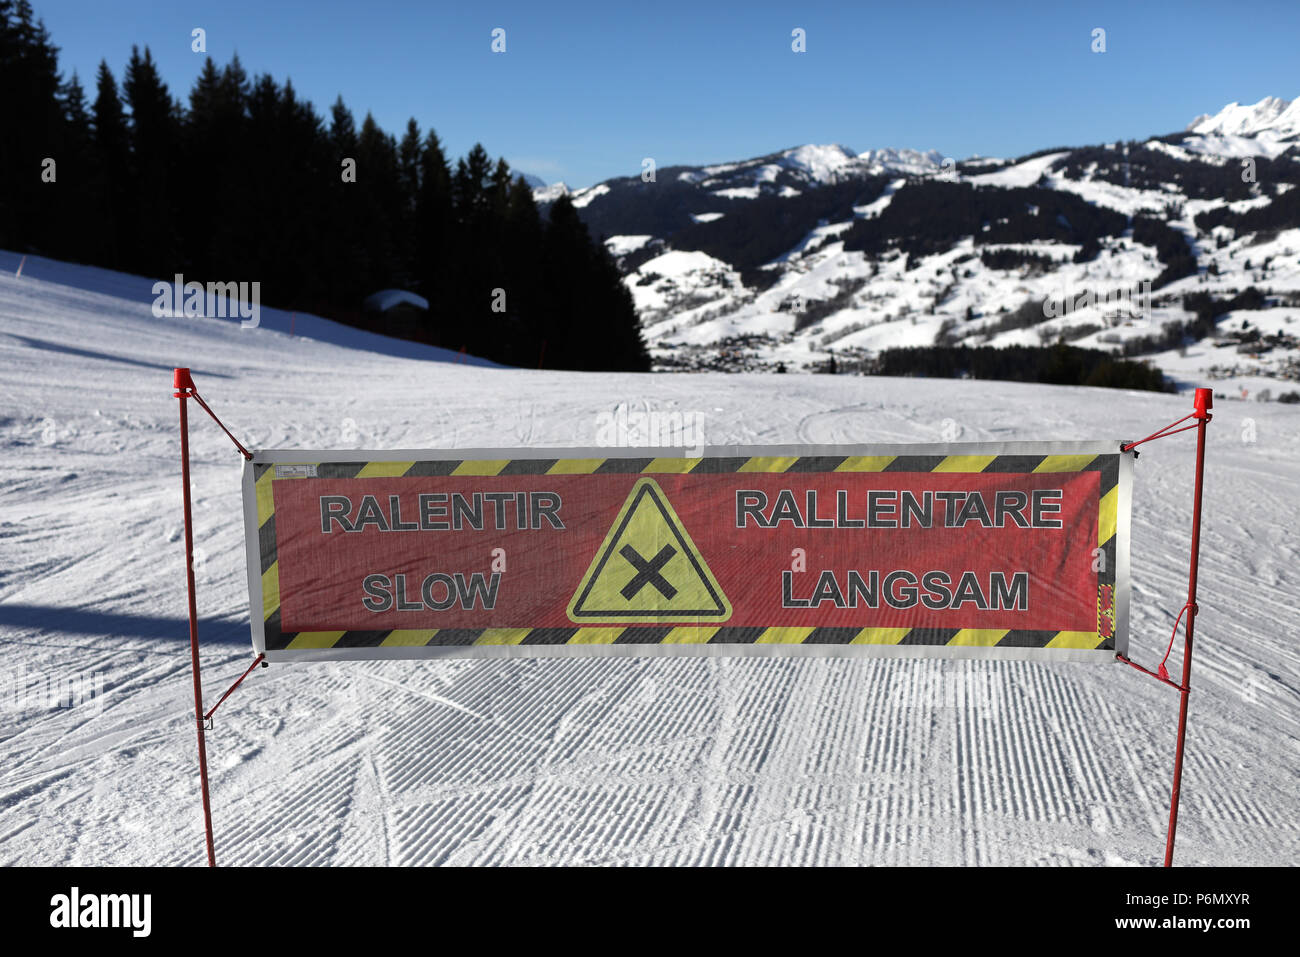 Alpes françaises. Les skieurs lents signe. Une piste de ski. Saint-Gervais. La France. Banque D'Images